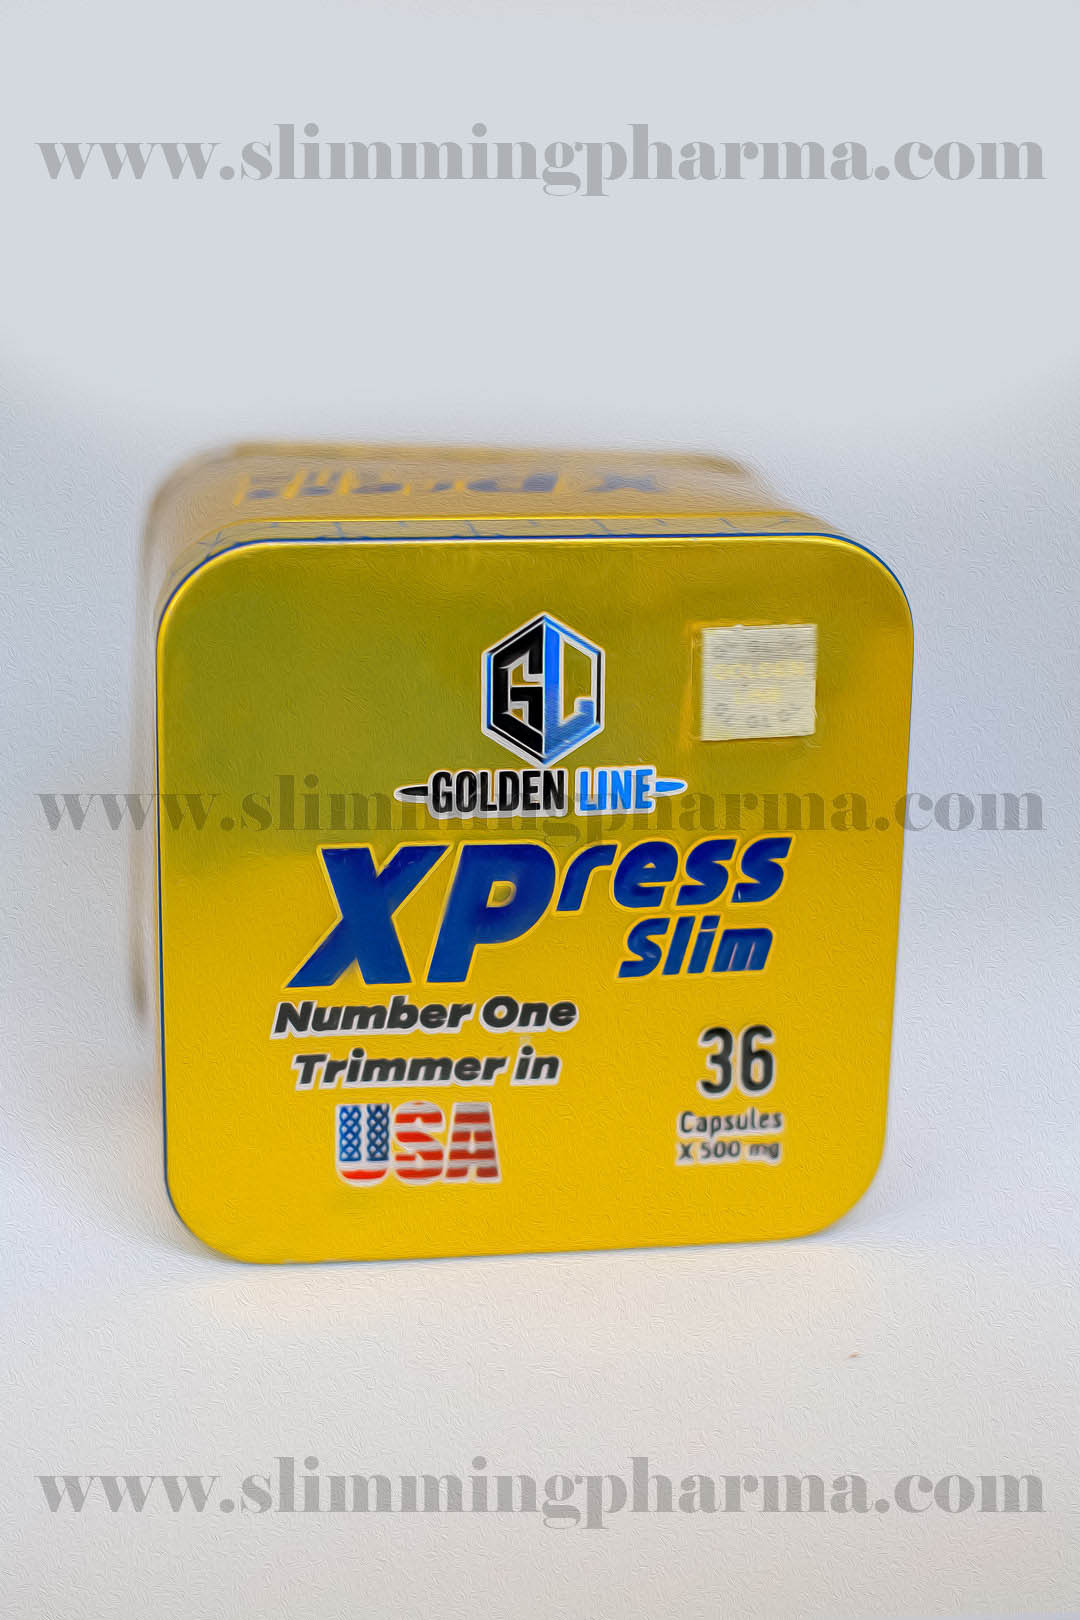 كبسولات اكسبريس سليم للتخسيس 36 كبسولة – xpress slim - Slimming Pharma